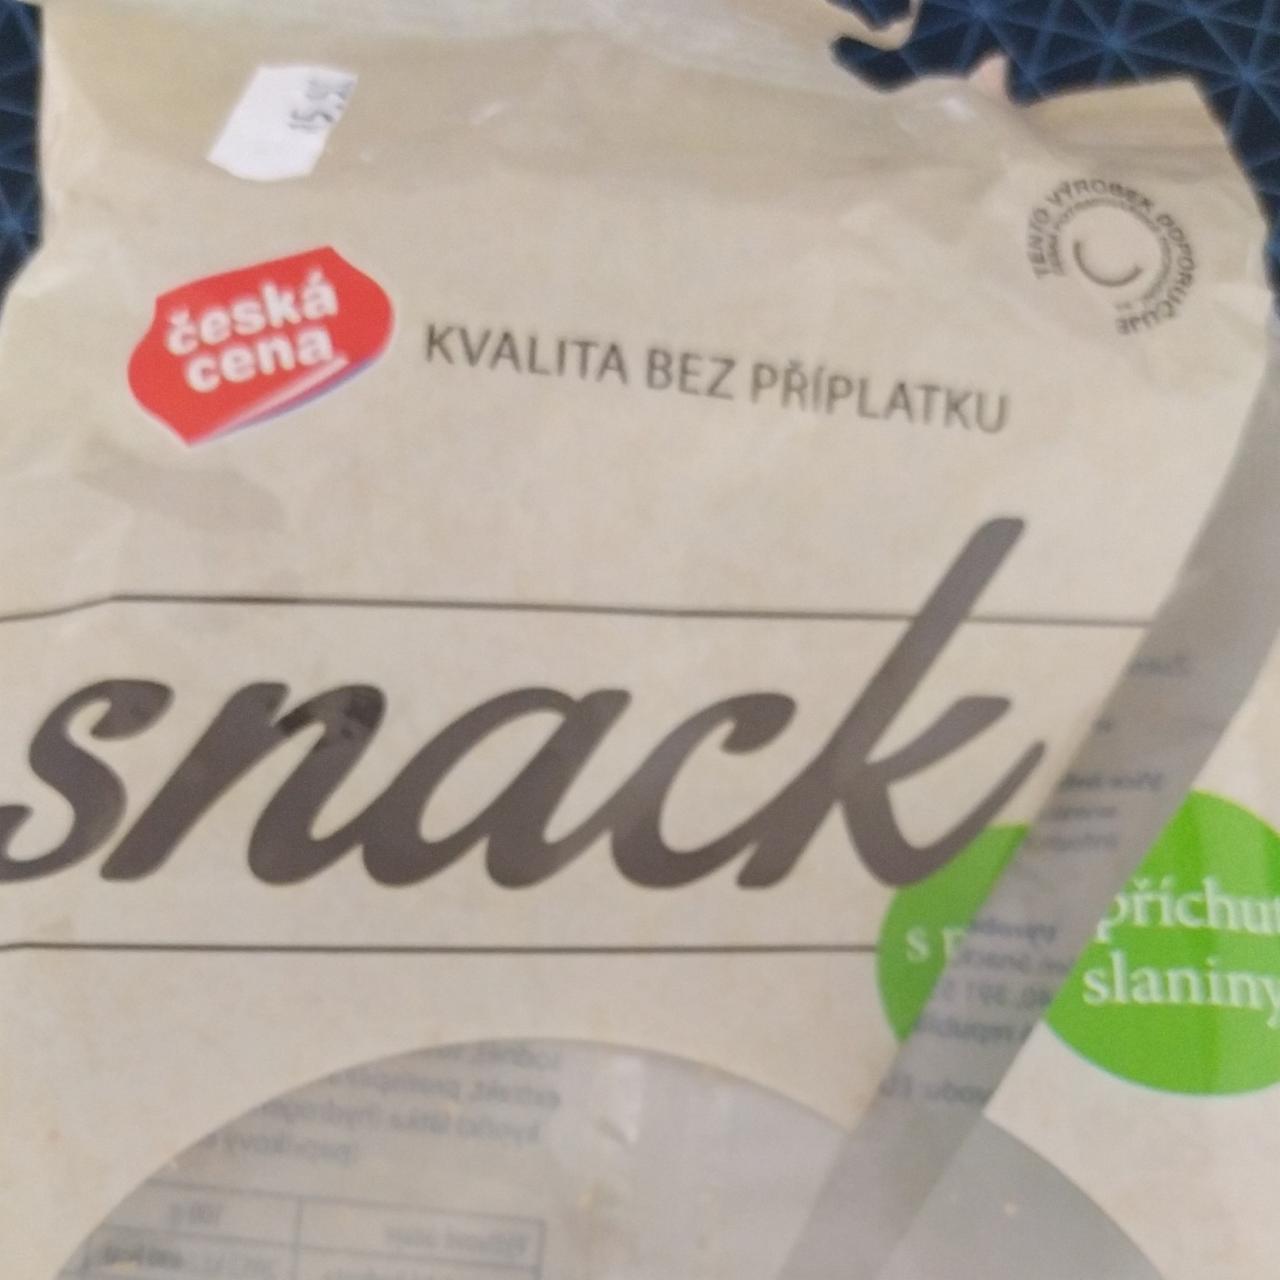 Fotografie - Pšeničný snack s příchutí slaniny Česká cena